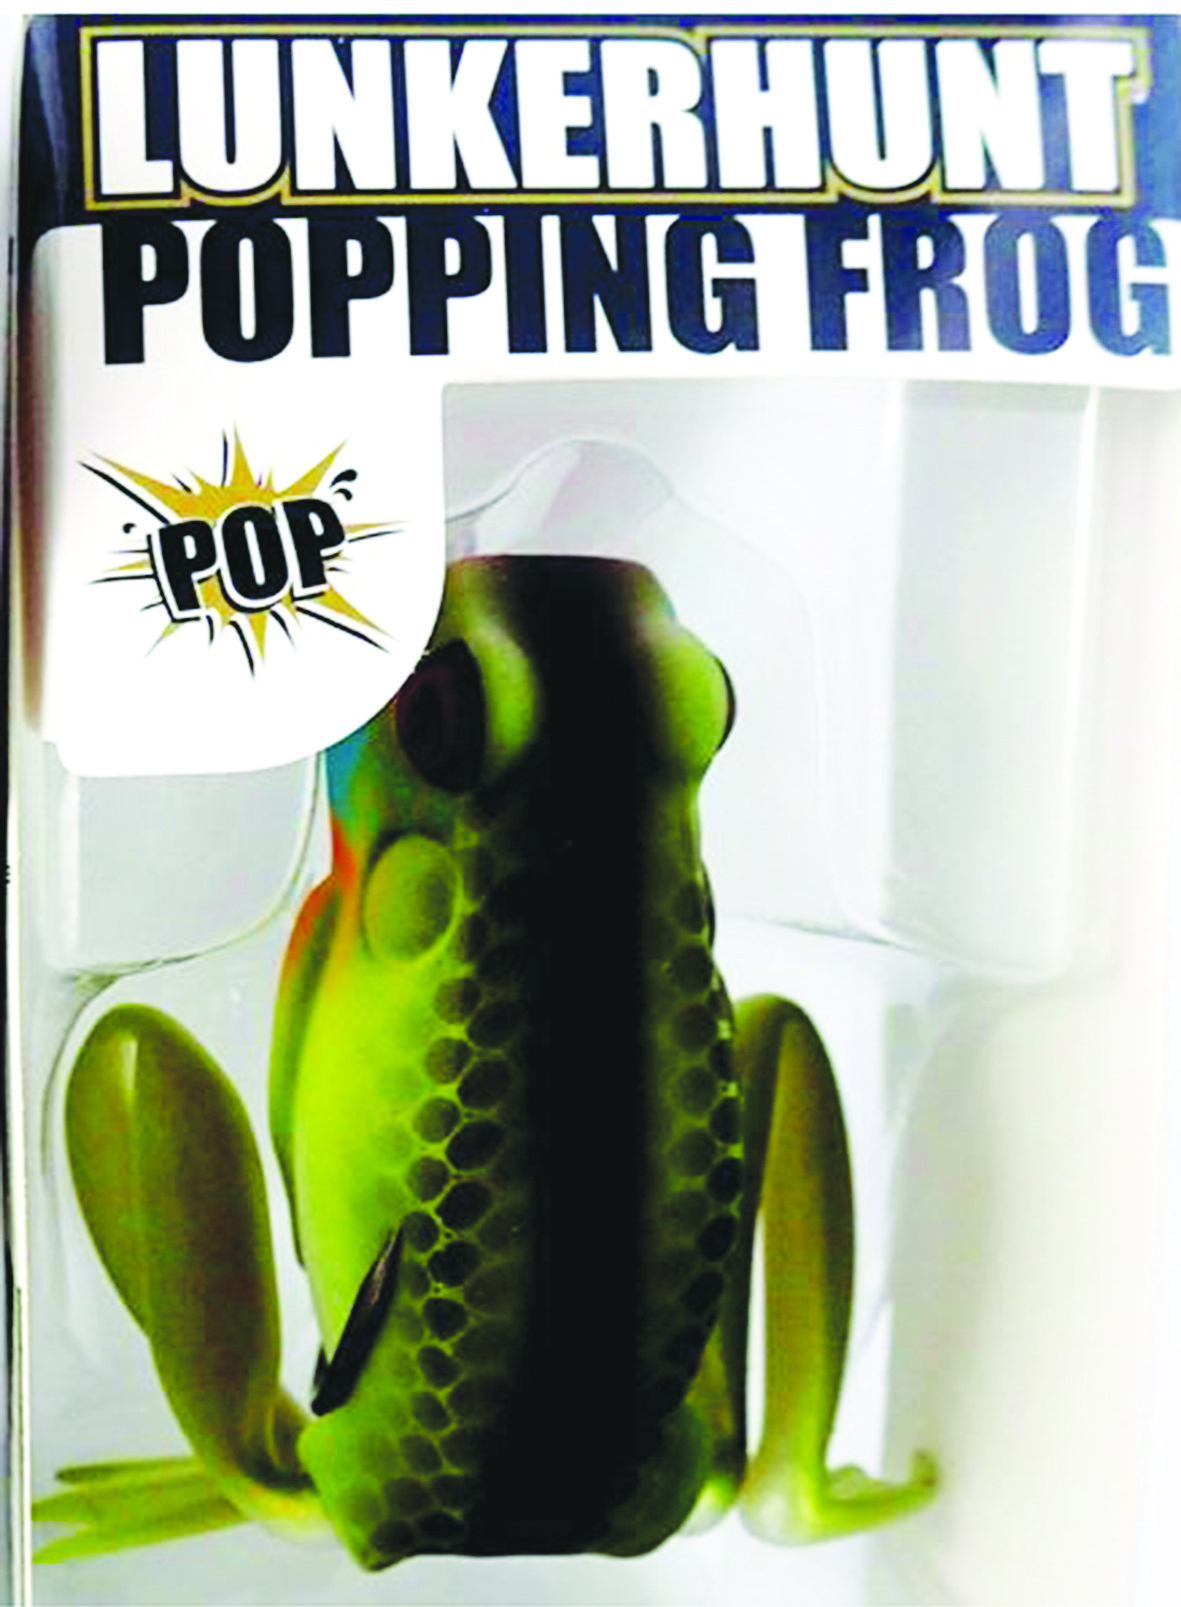 B&B poping frogs